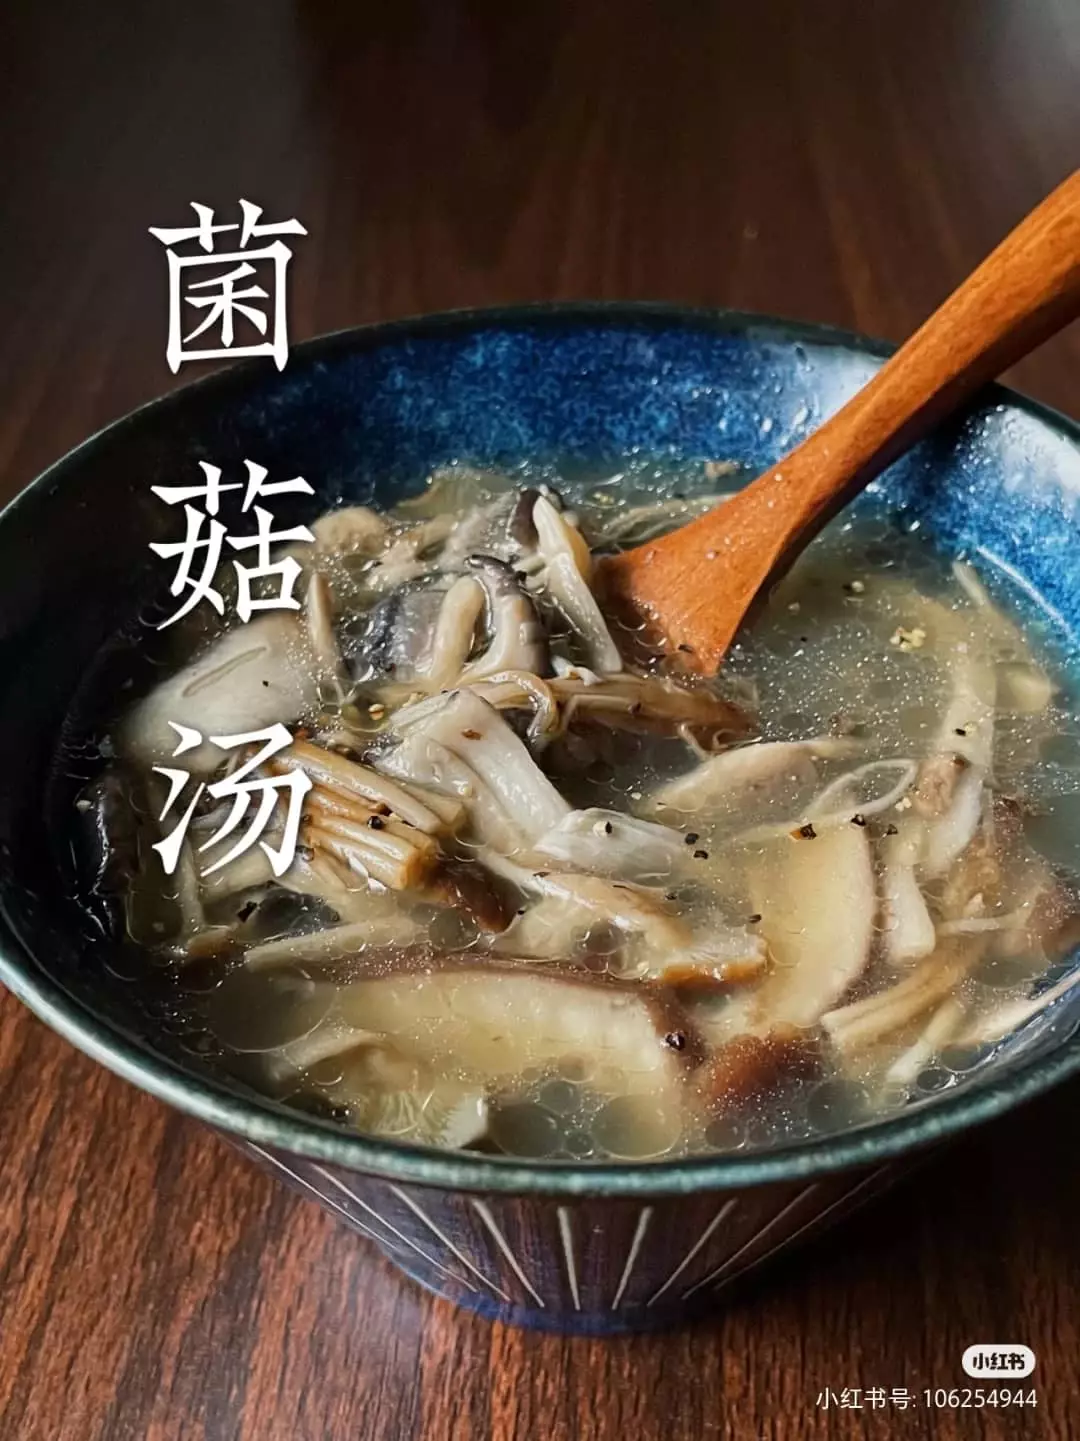  【素食】食譜分享簡單營養菌菇湯